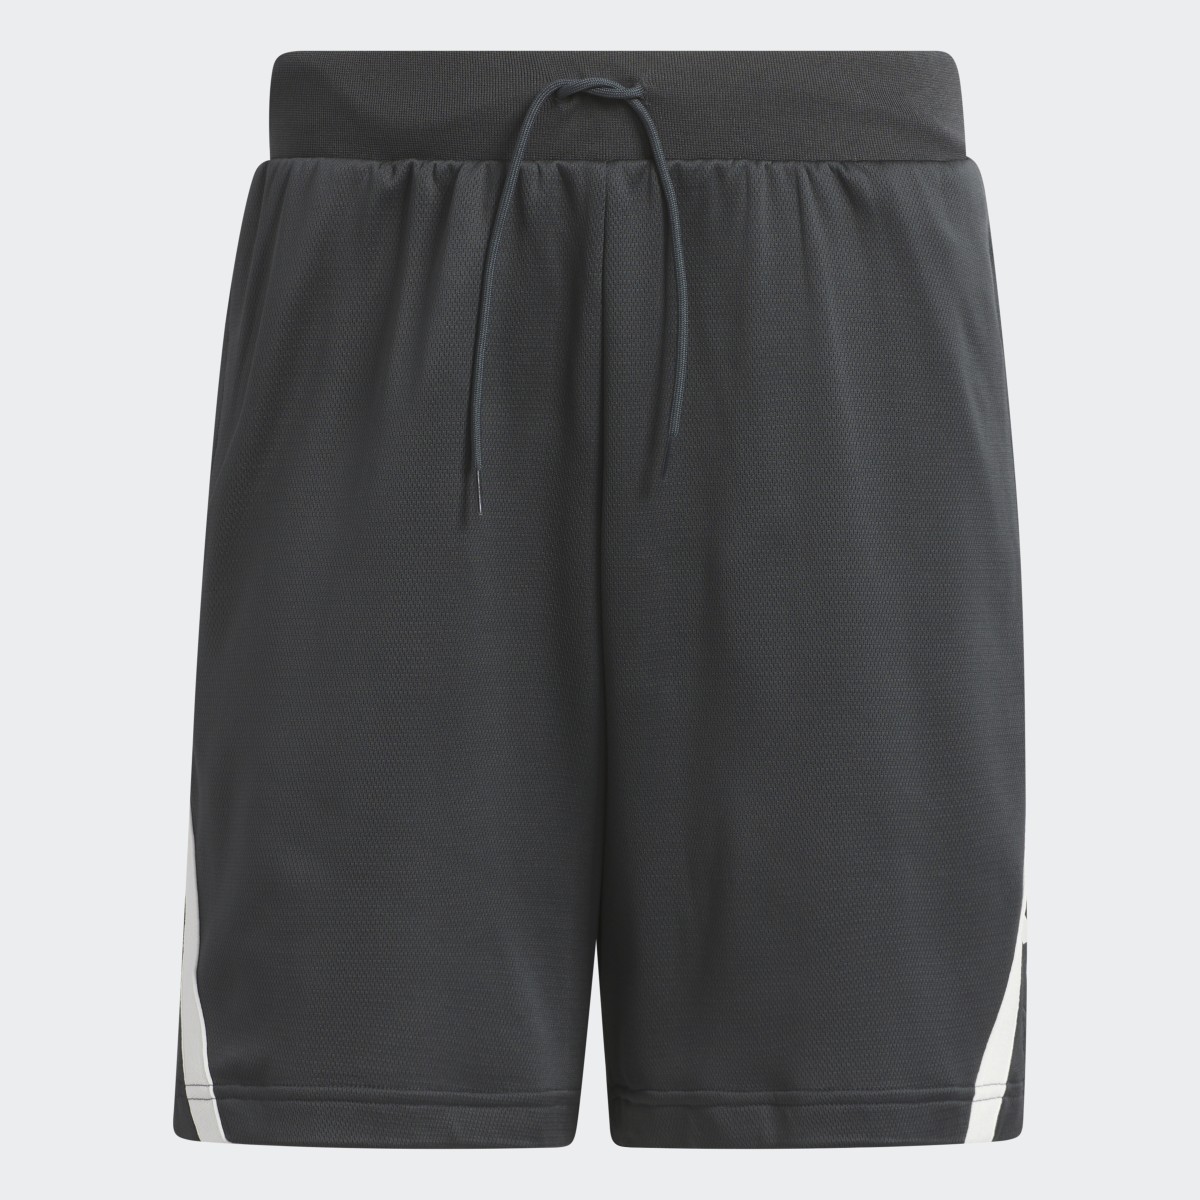 Adidas Shorts Select. 4